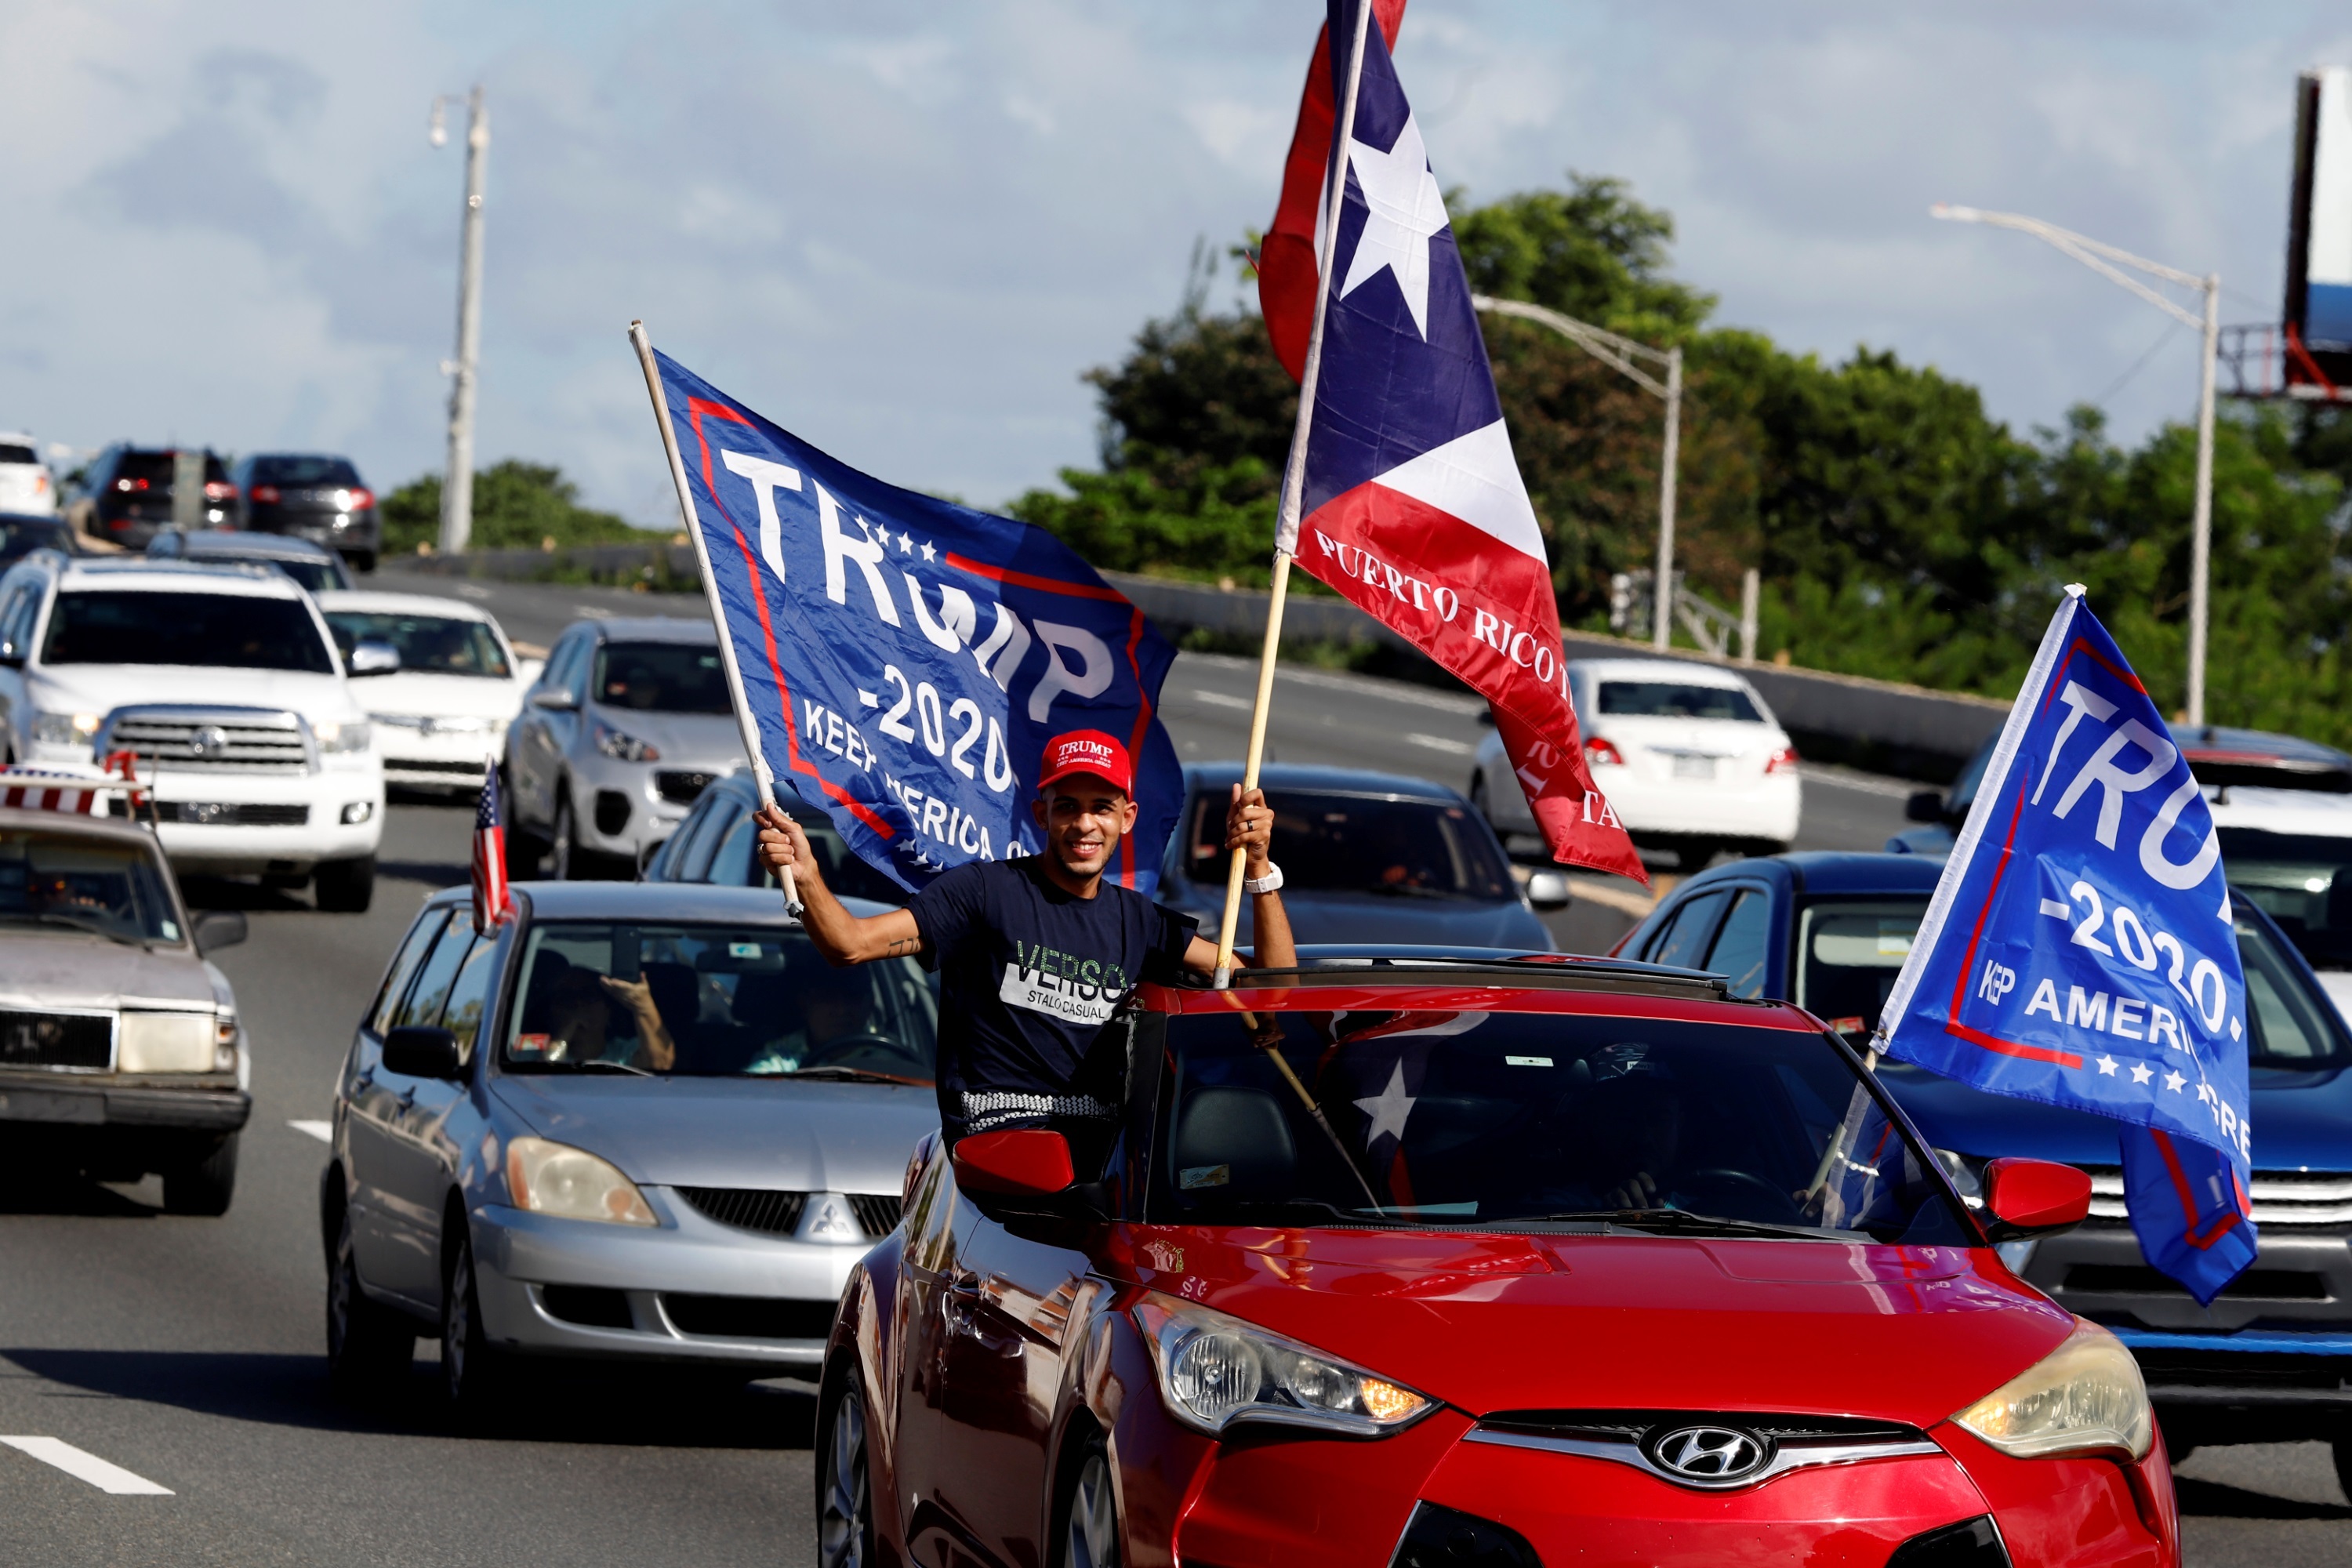 Simpatizantes de Trump en Puerto Rico realizaron caravana de autos para demostrar su apoyo